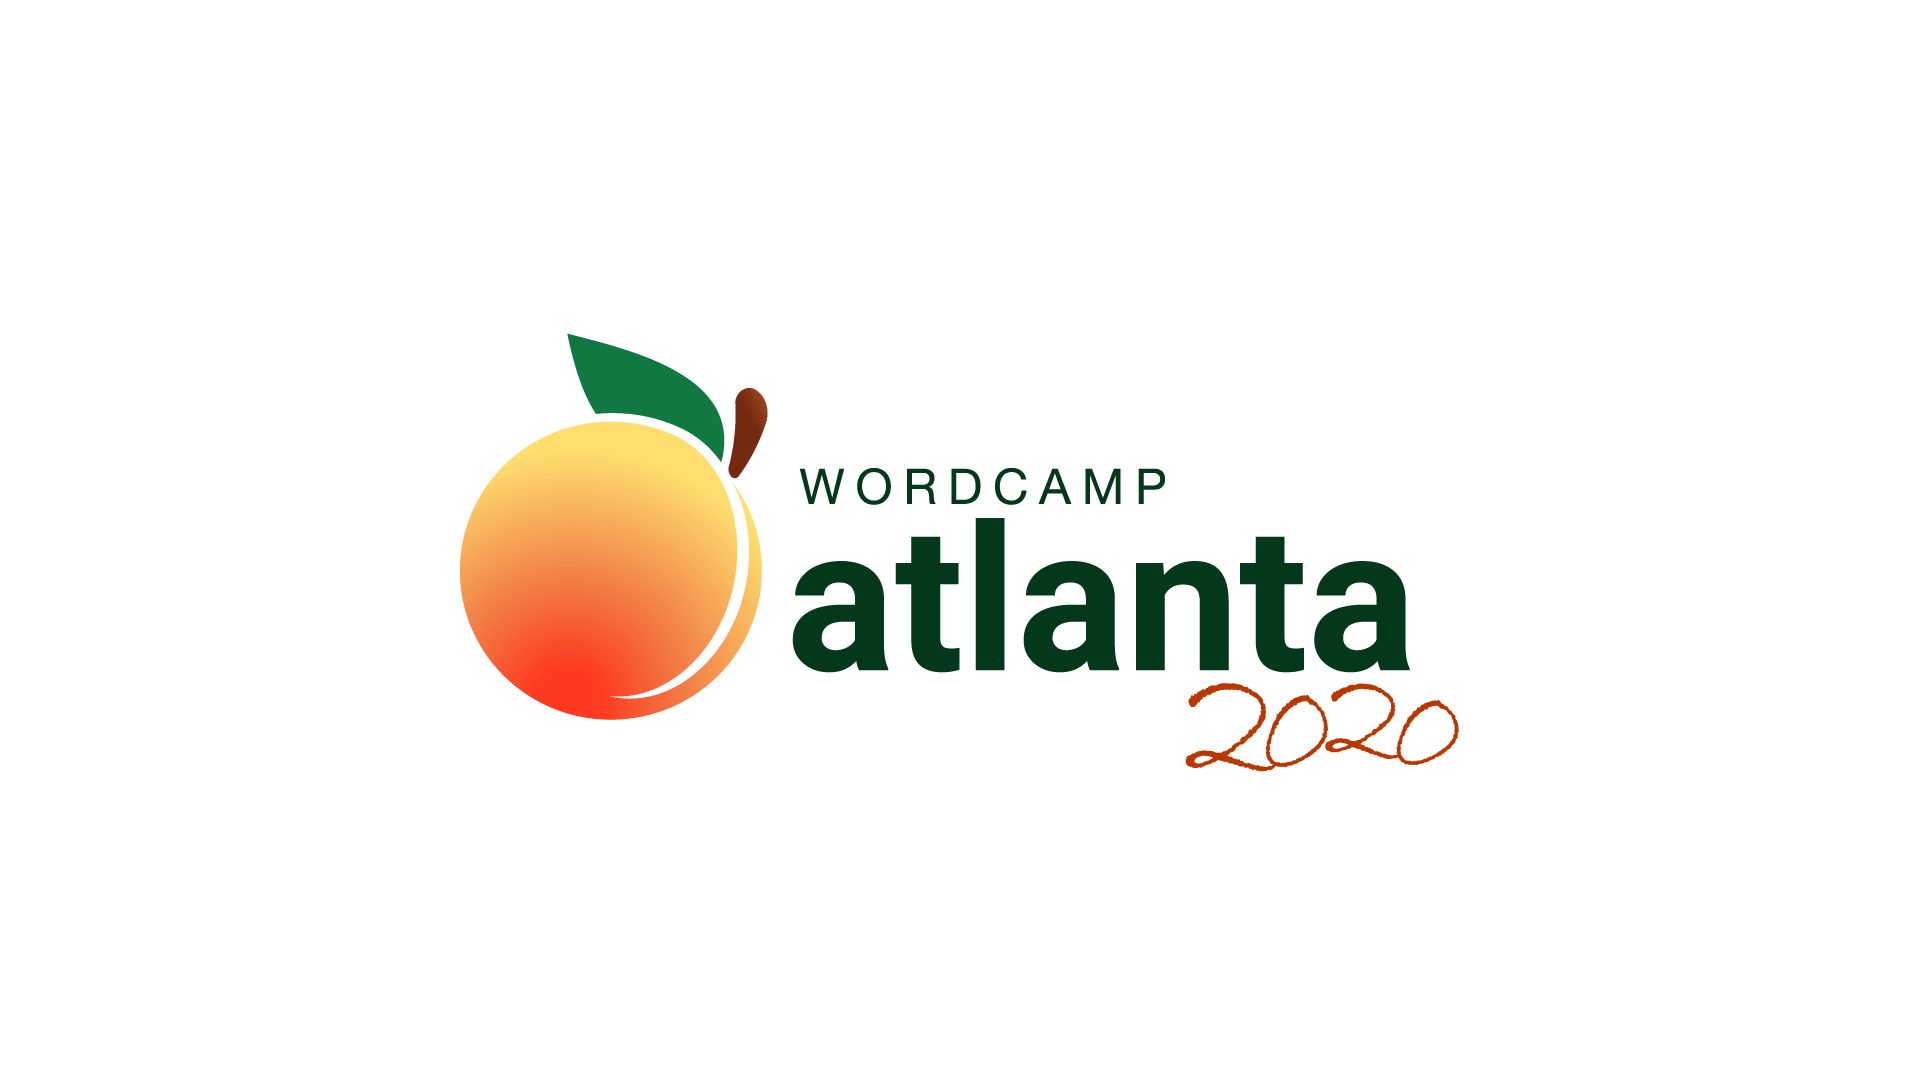 WordCamp Atlanta 2020 Branding Guide